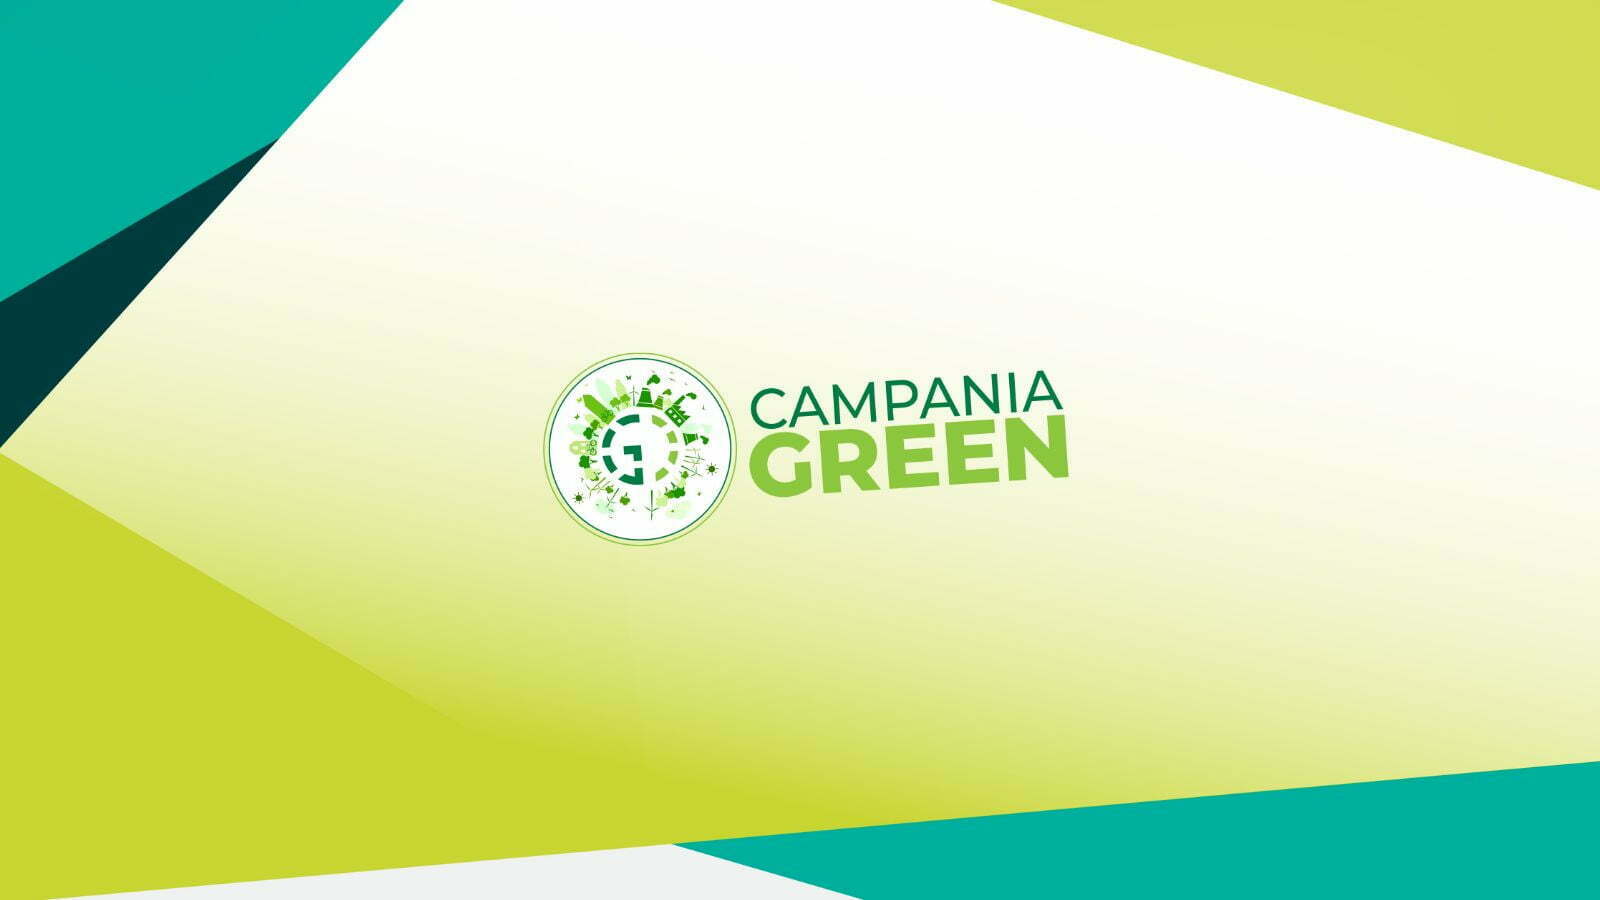 Campania Green: ultimi giorni per partecipare